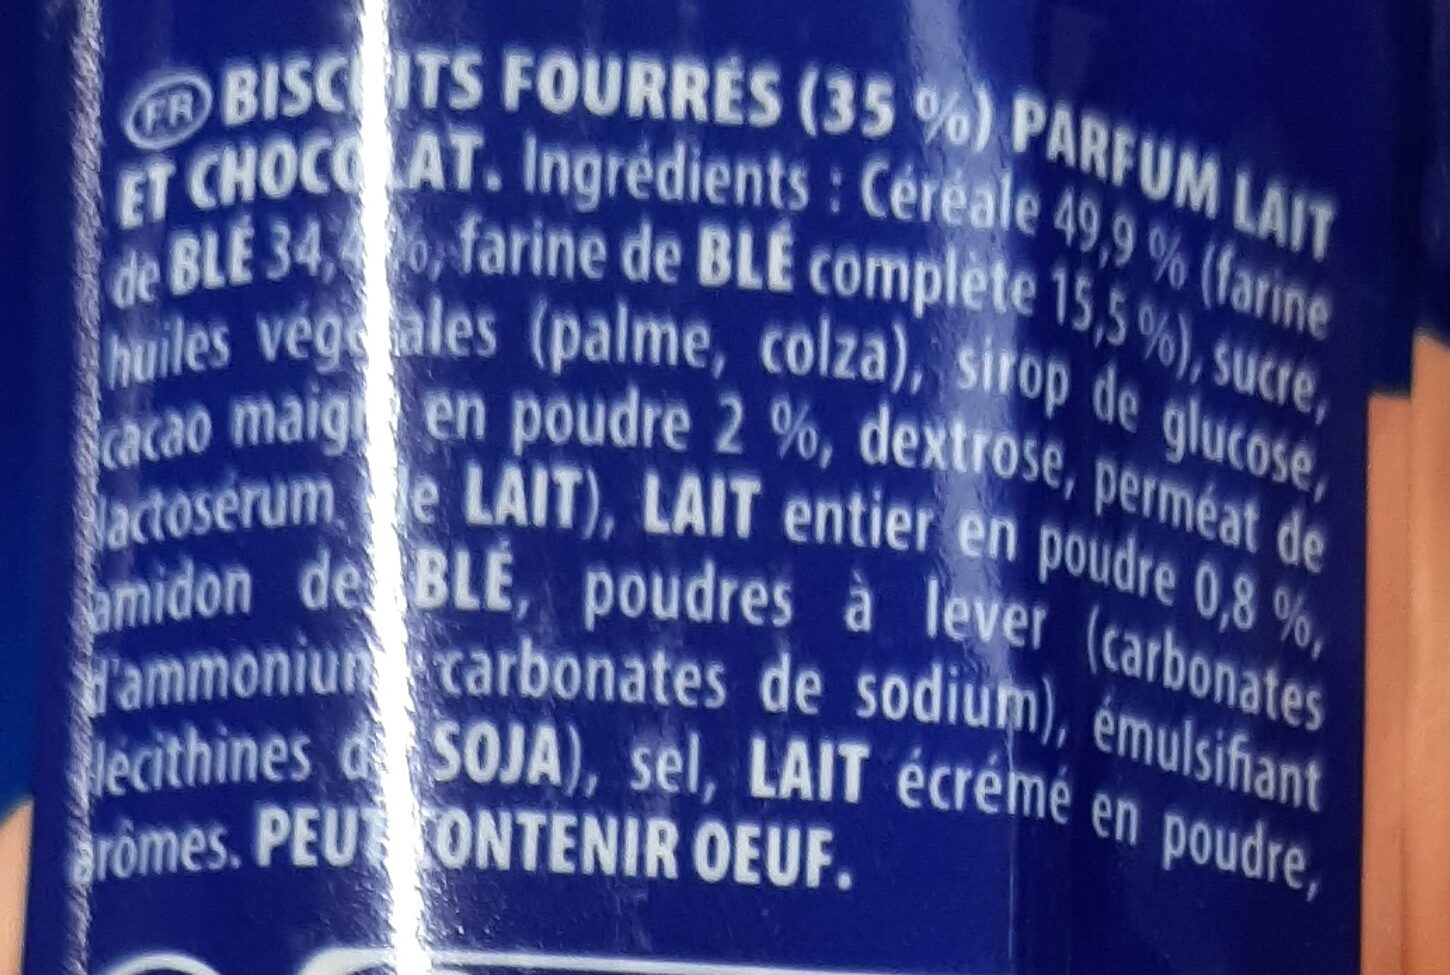 Prince - Biscuits fourrés goût lait choco - Ingredienti - fr